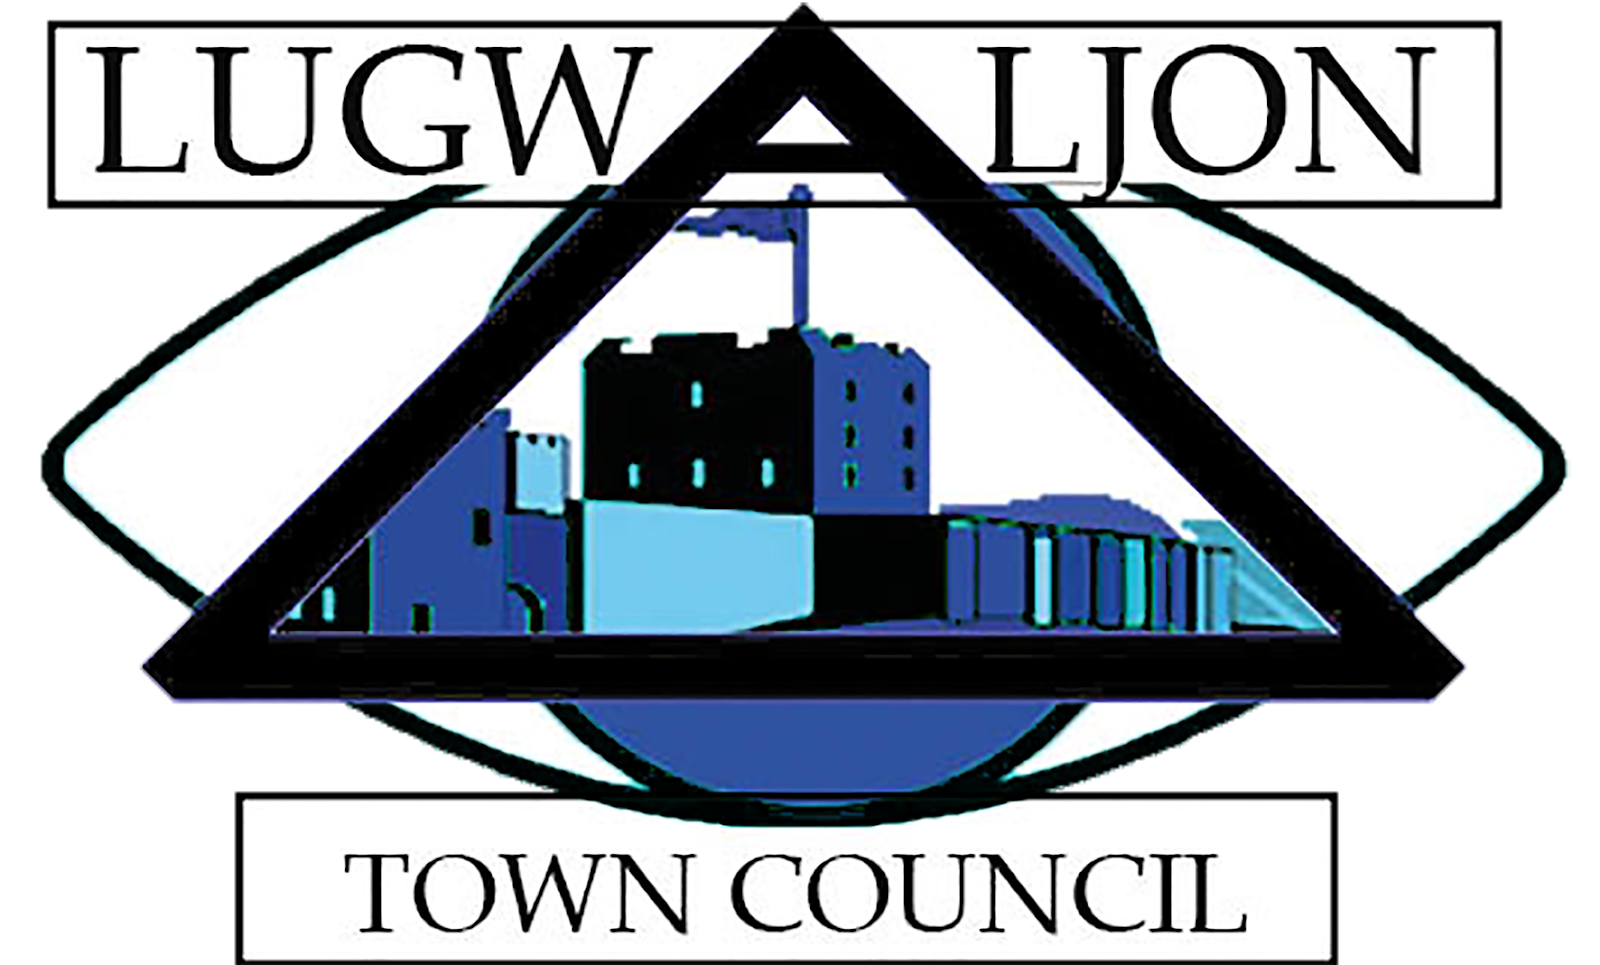 Lugwaljon Town Council